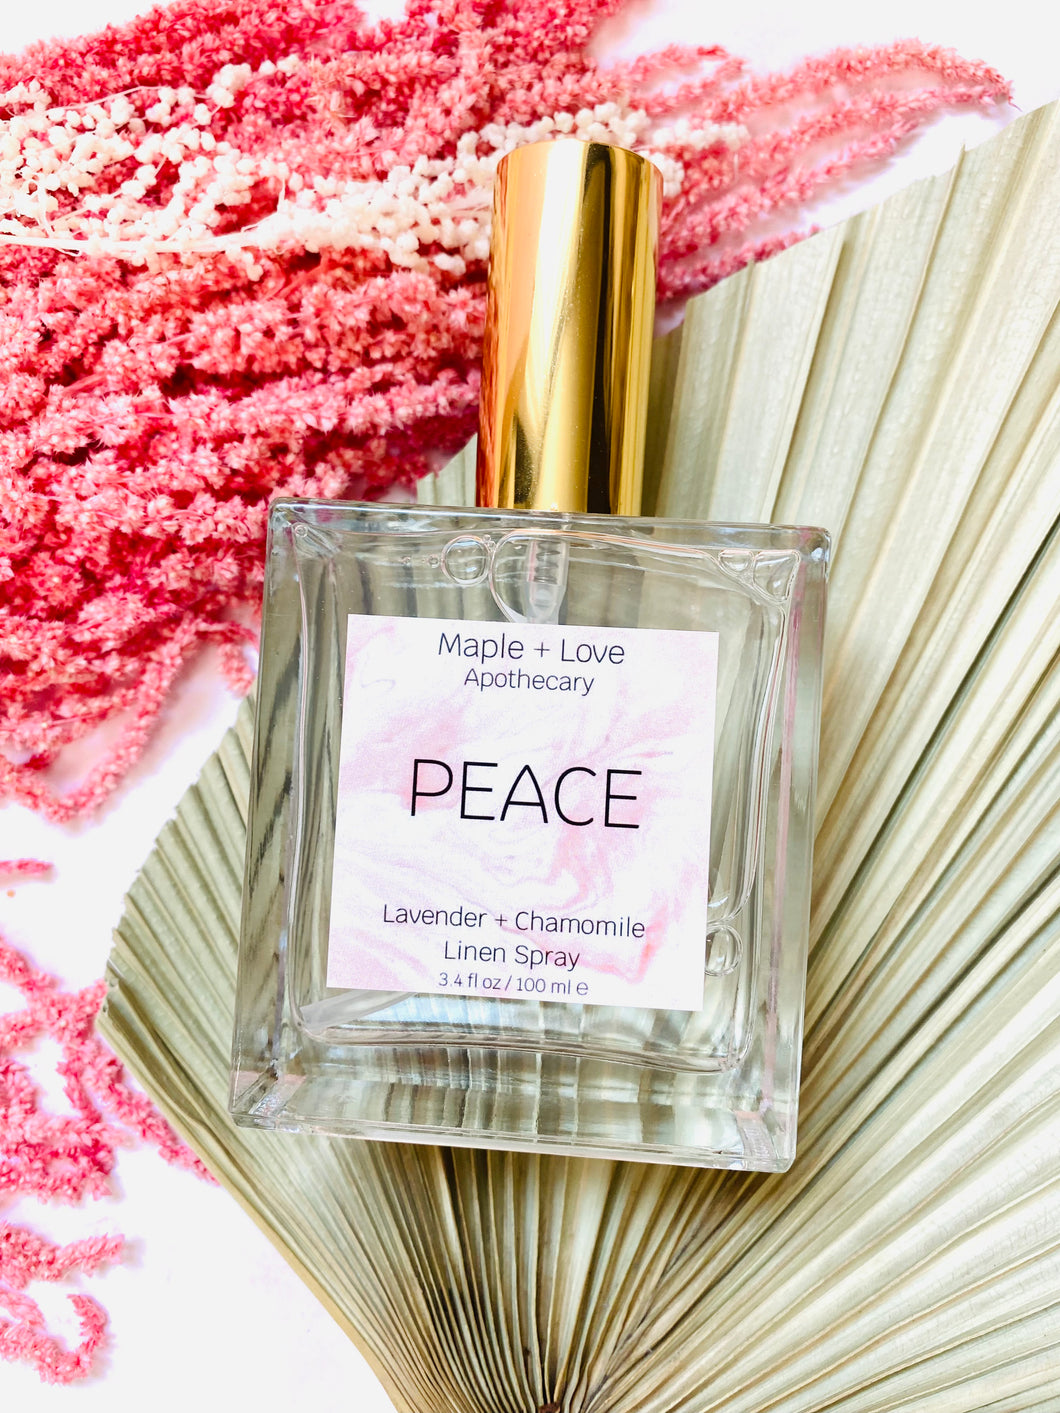 PEACE - Lavender + Chamomile Linen Spray